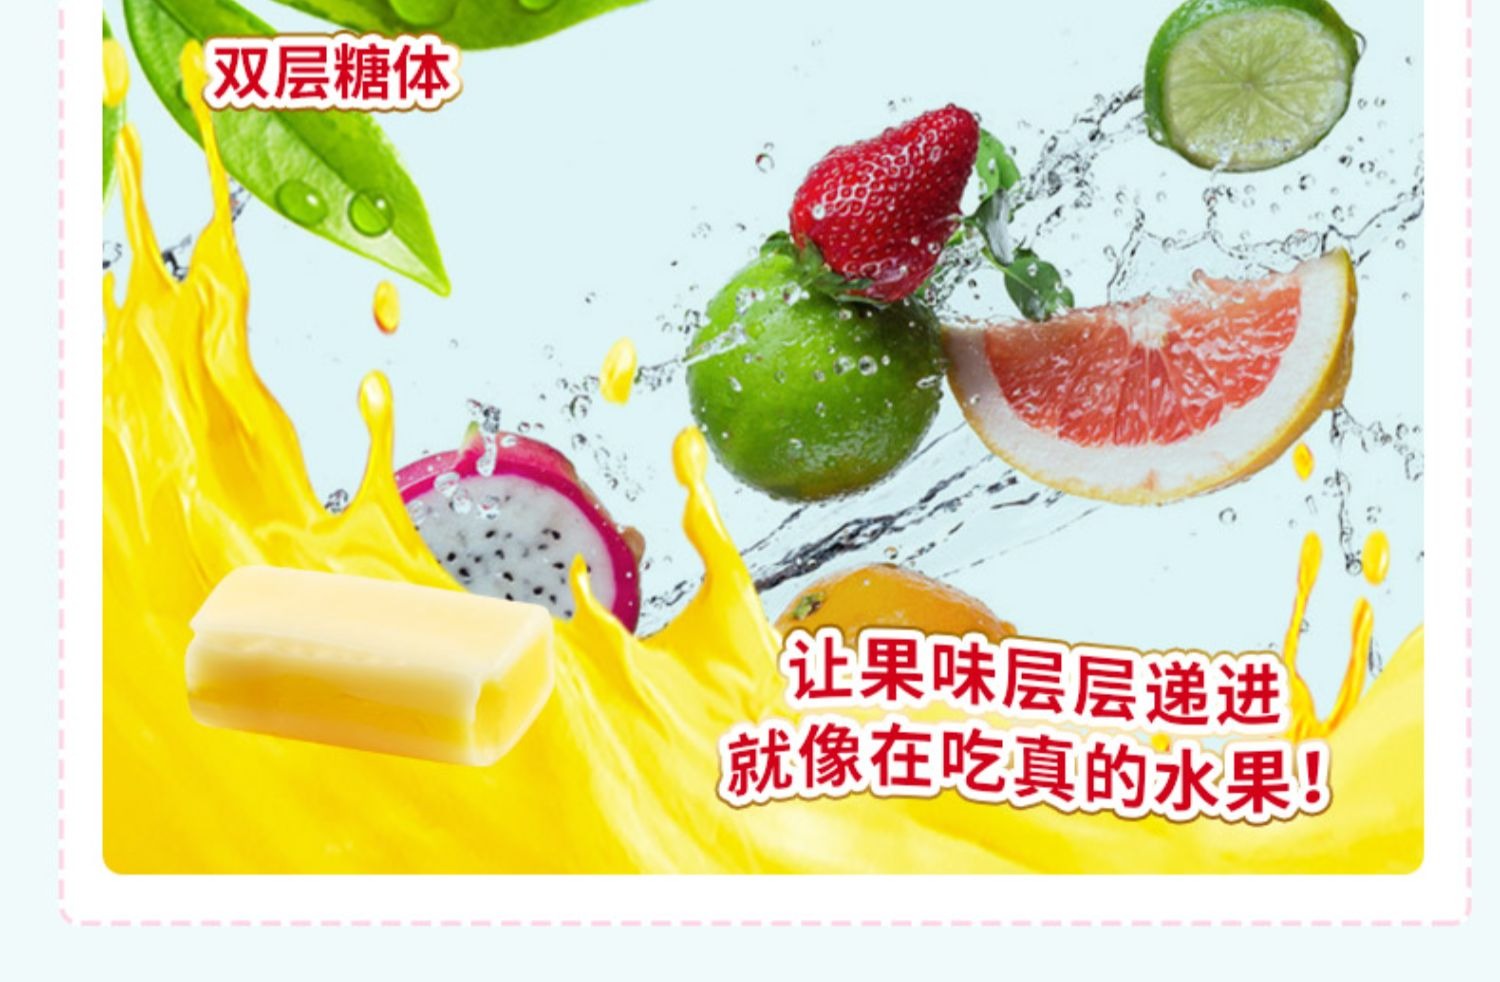 MORINAGA 森永HI-CHEW果汁軟糖12粒入檸檬味